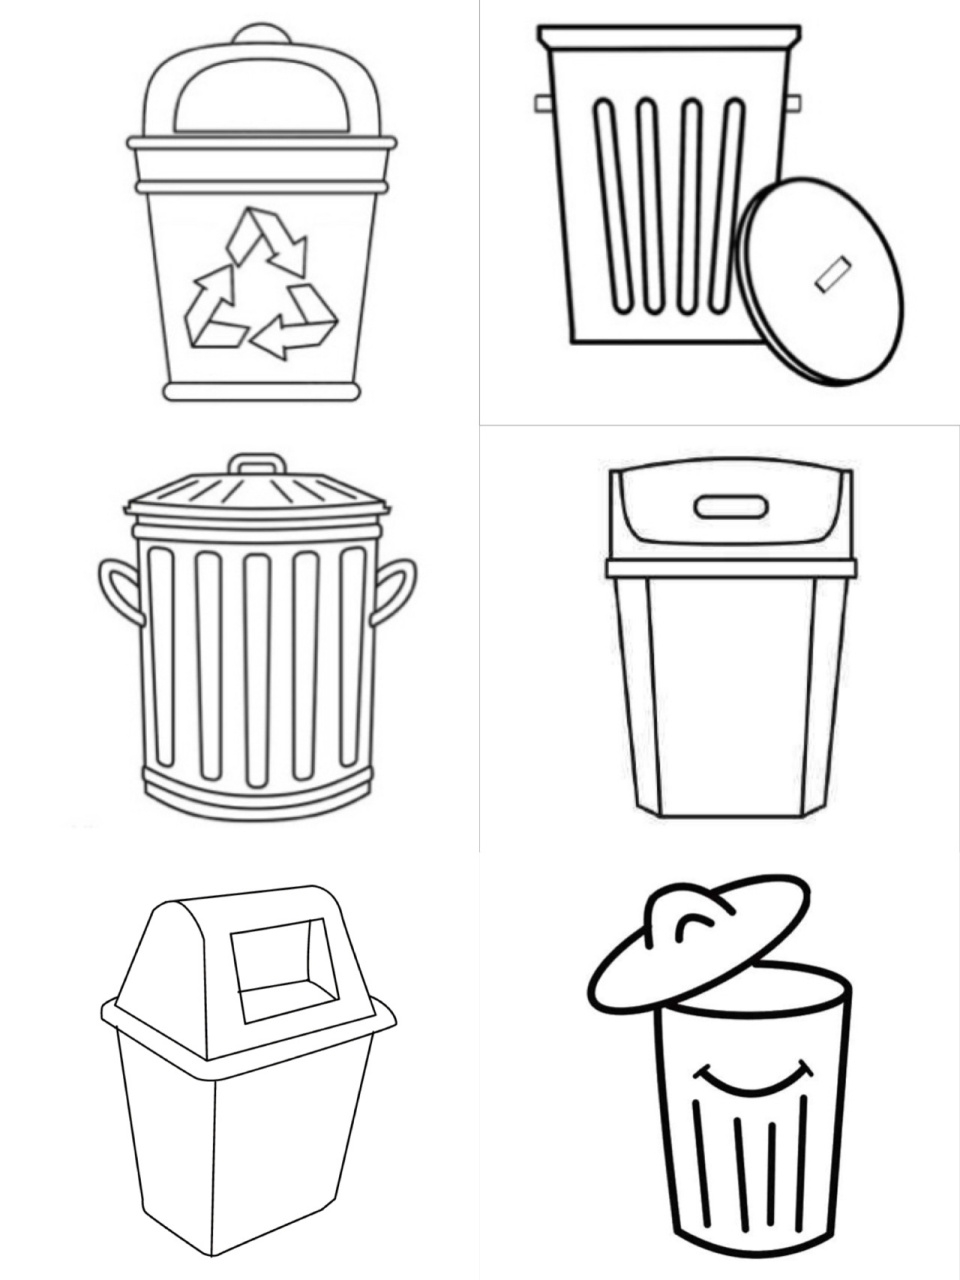 垃圾桶怎么画简笔图片